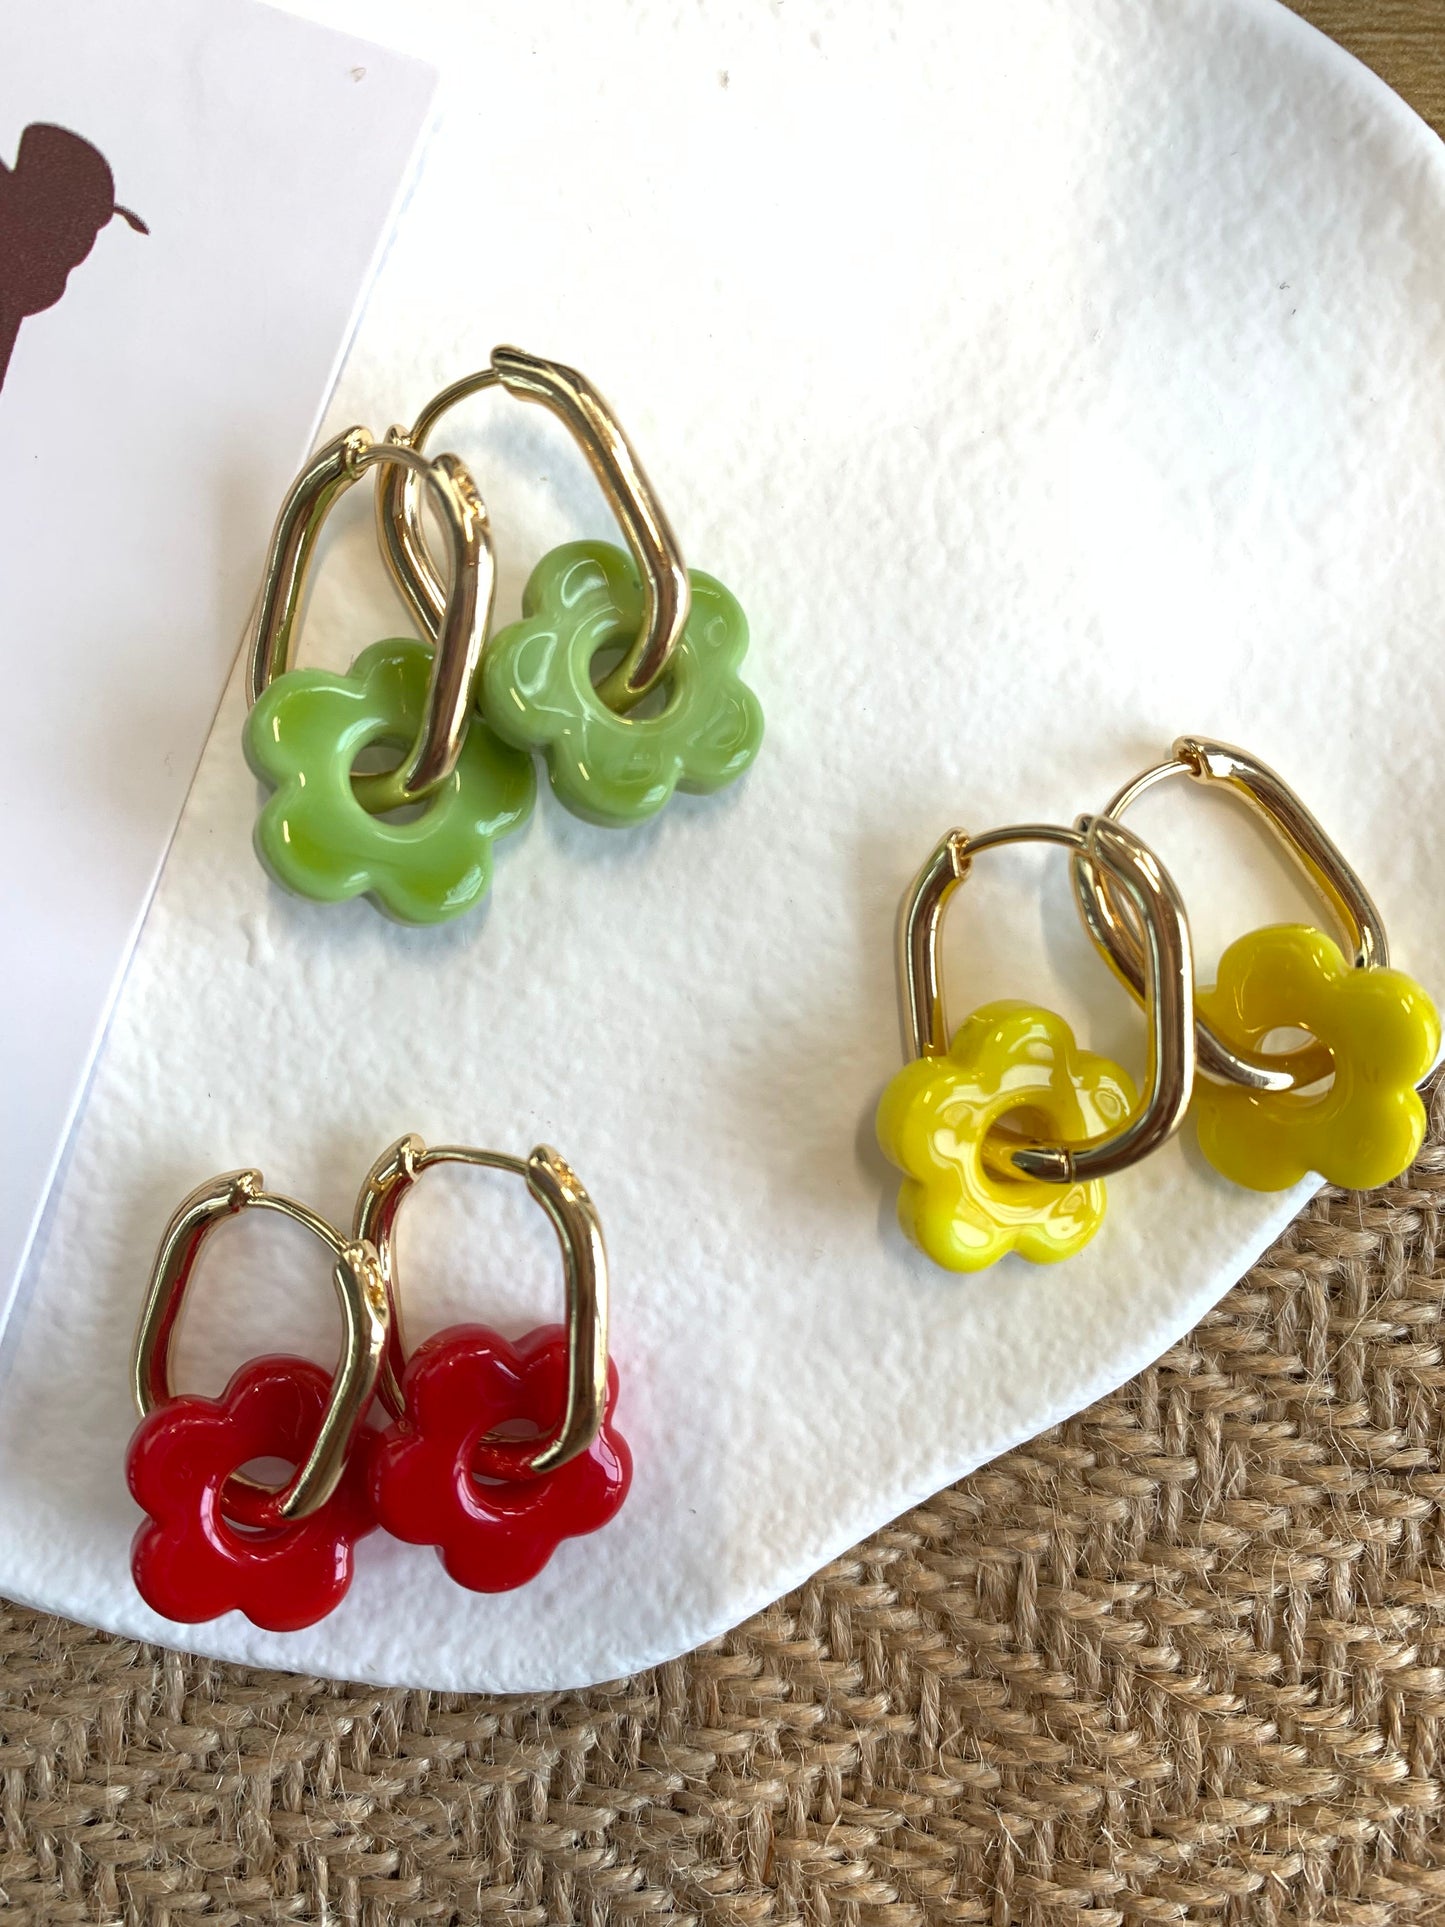 Ceramic flower earrings